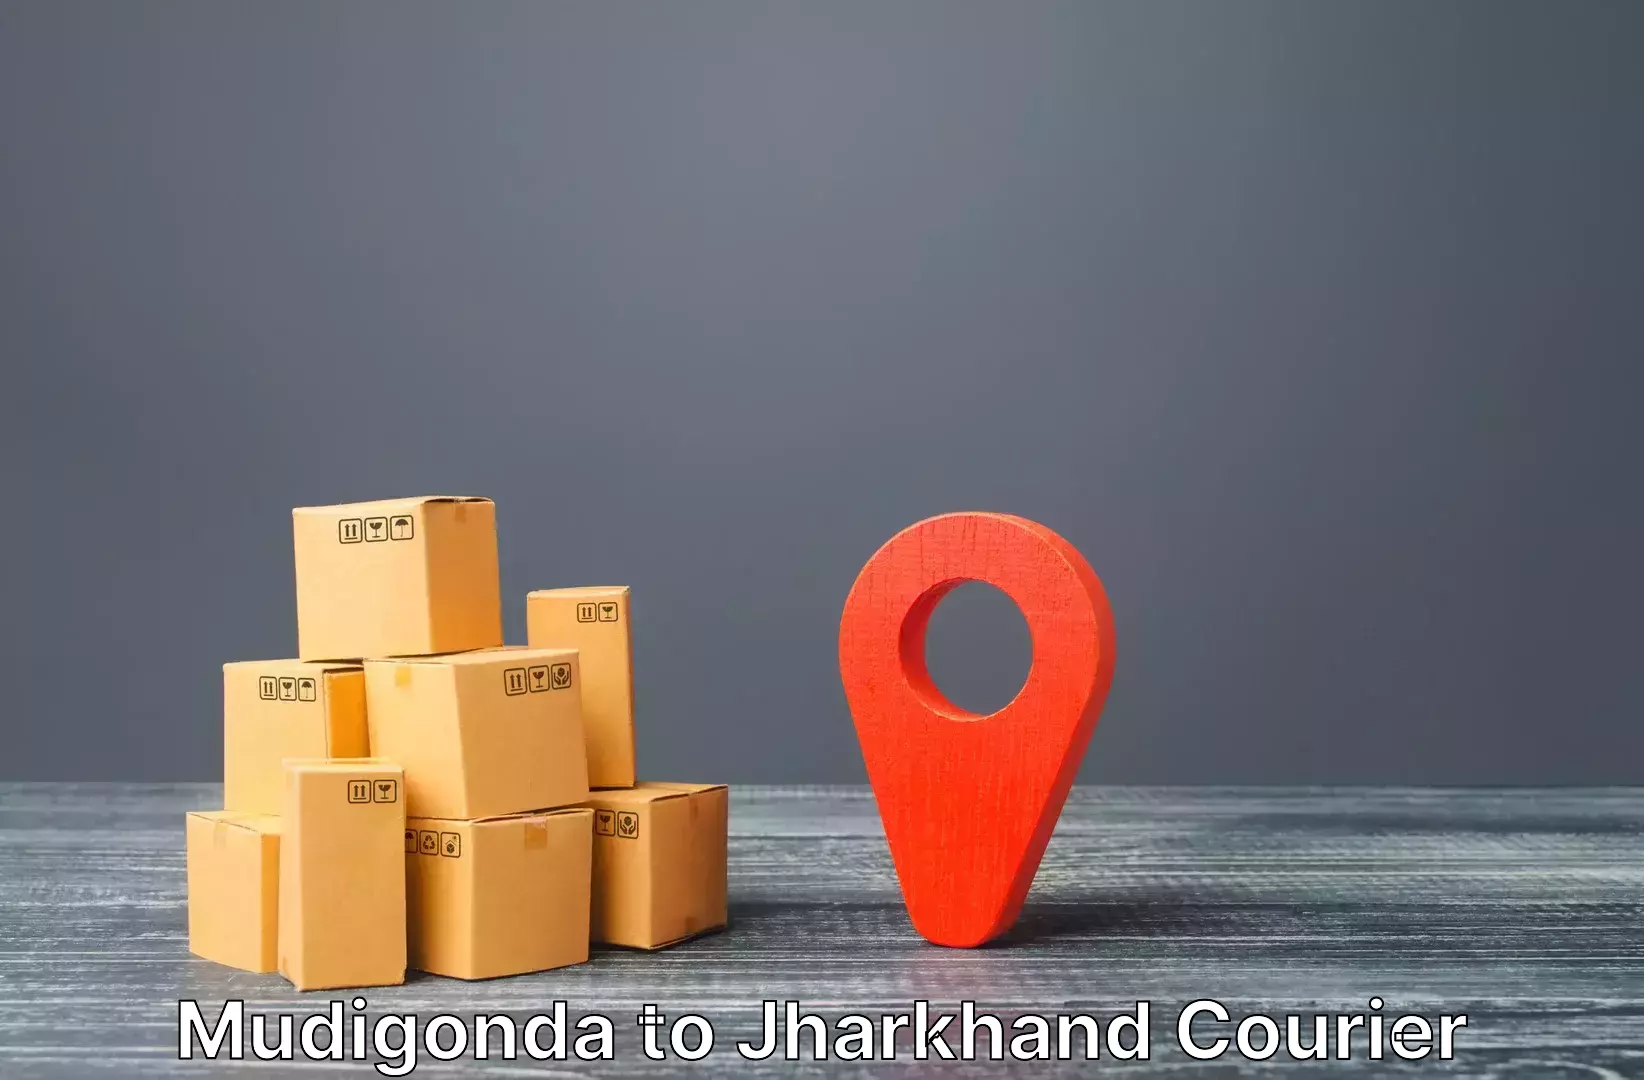 Luggage forwarding service Mudigonda to Bero Ranchi